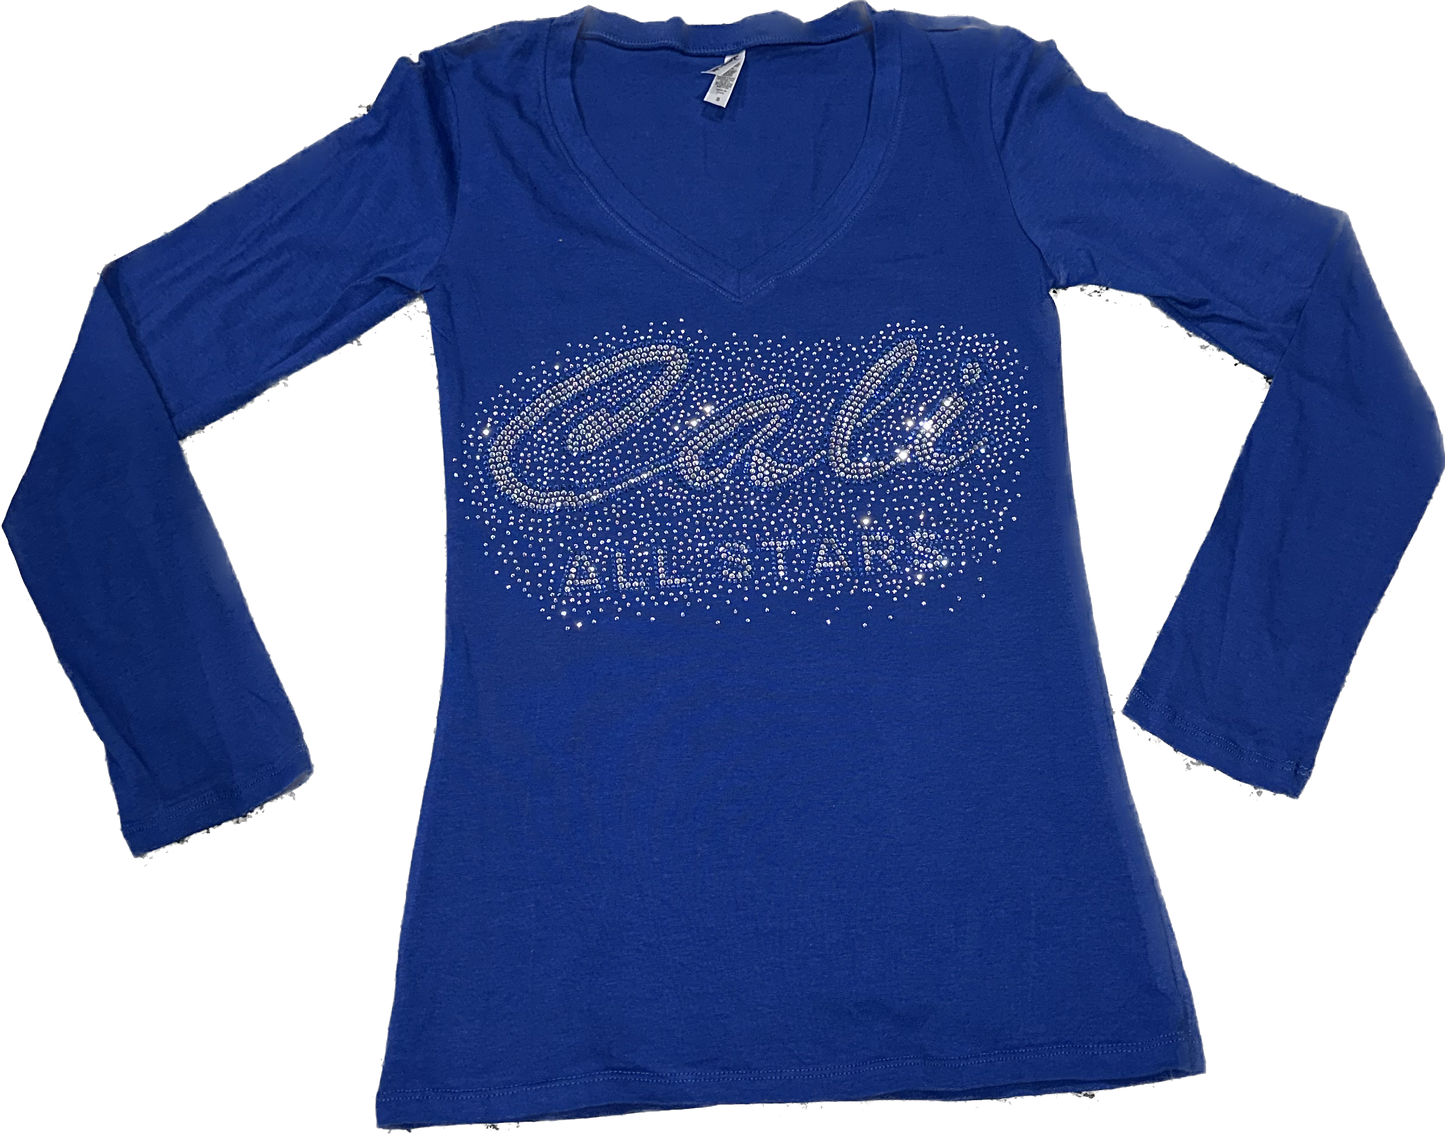 Long Sleeve Blue V-Neck with Bling "Cali" Cursive Letter Design